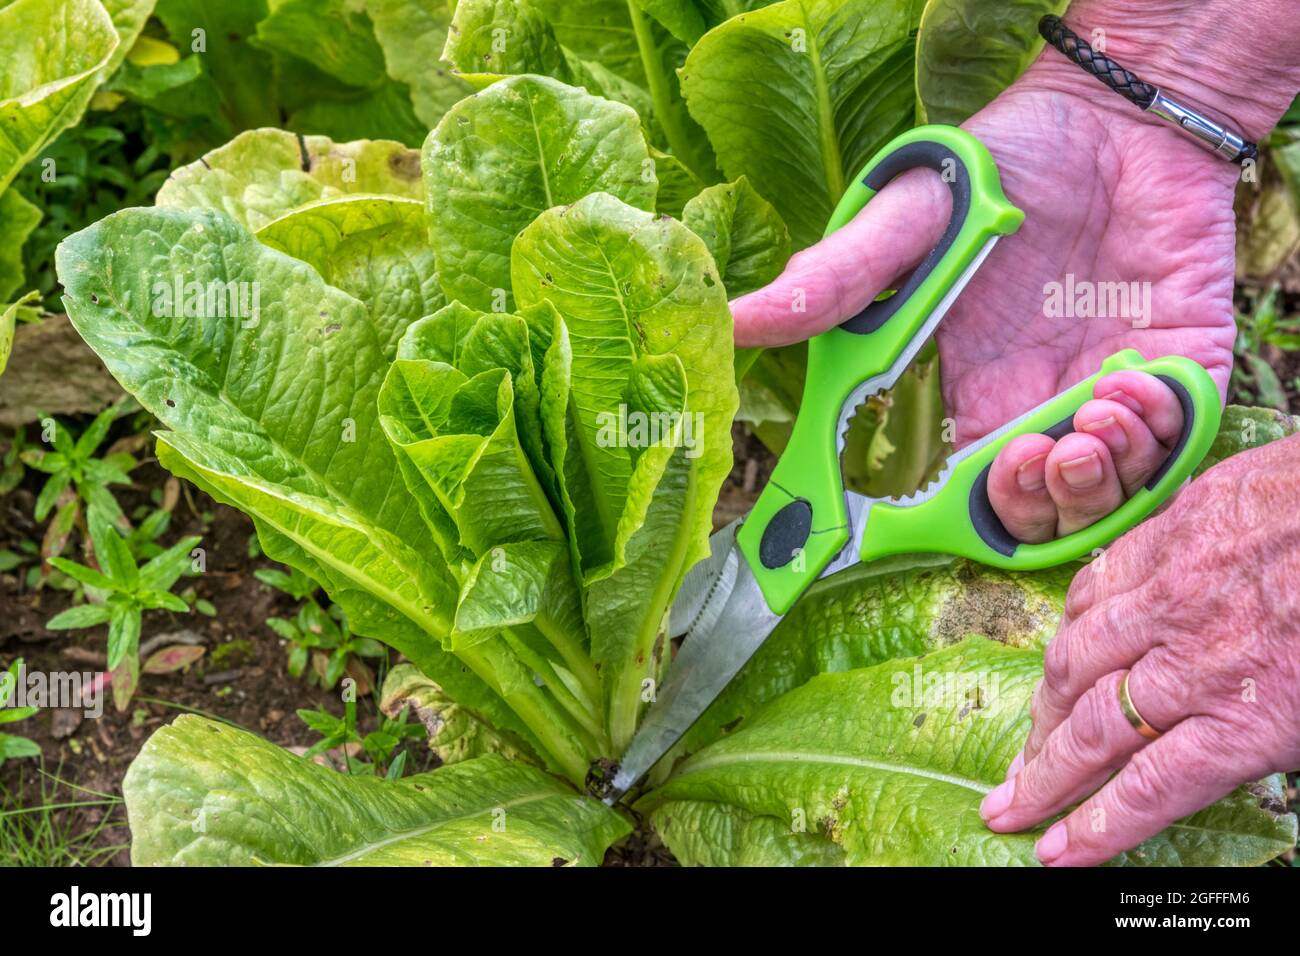 Woman harvesting a Cut & Come Again lettuce, Lactuca sativa. Stock Photo